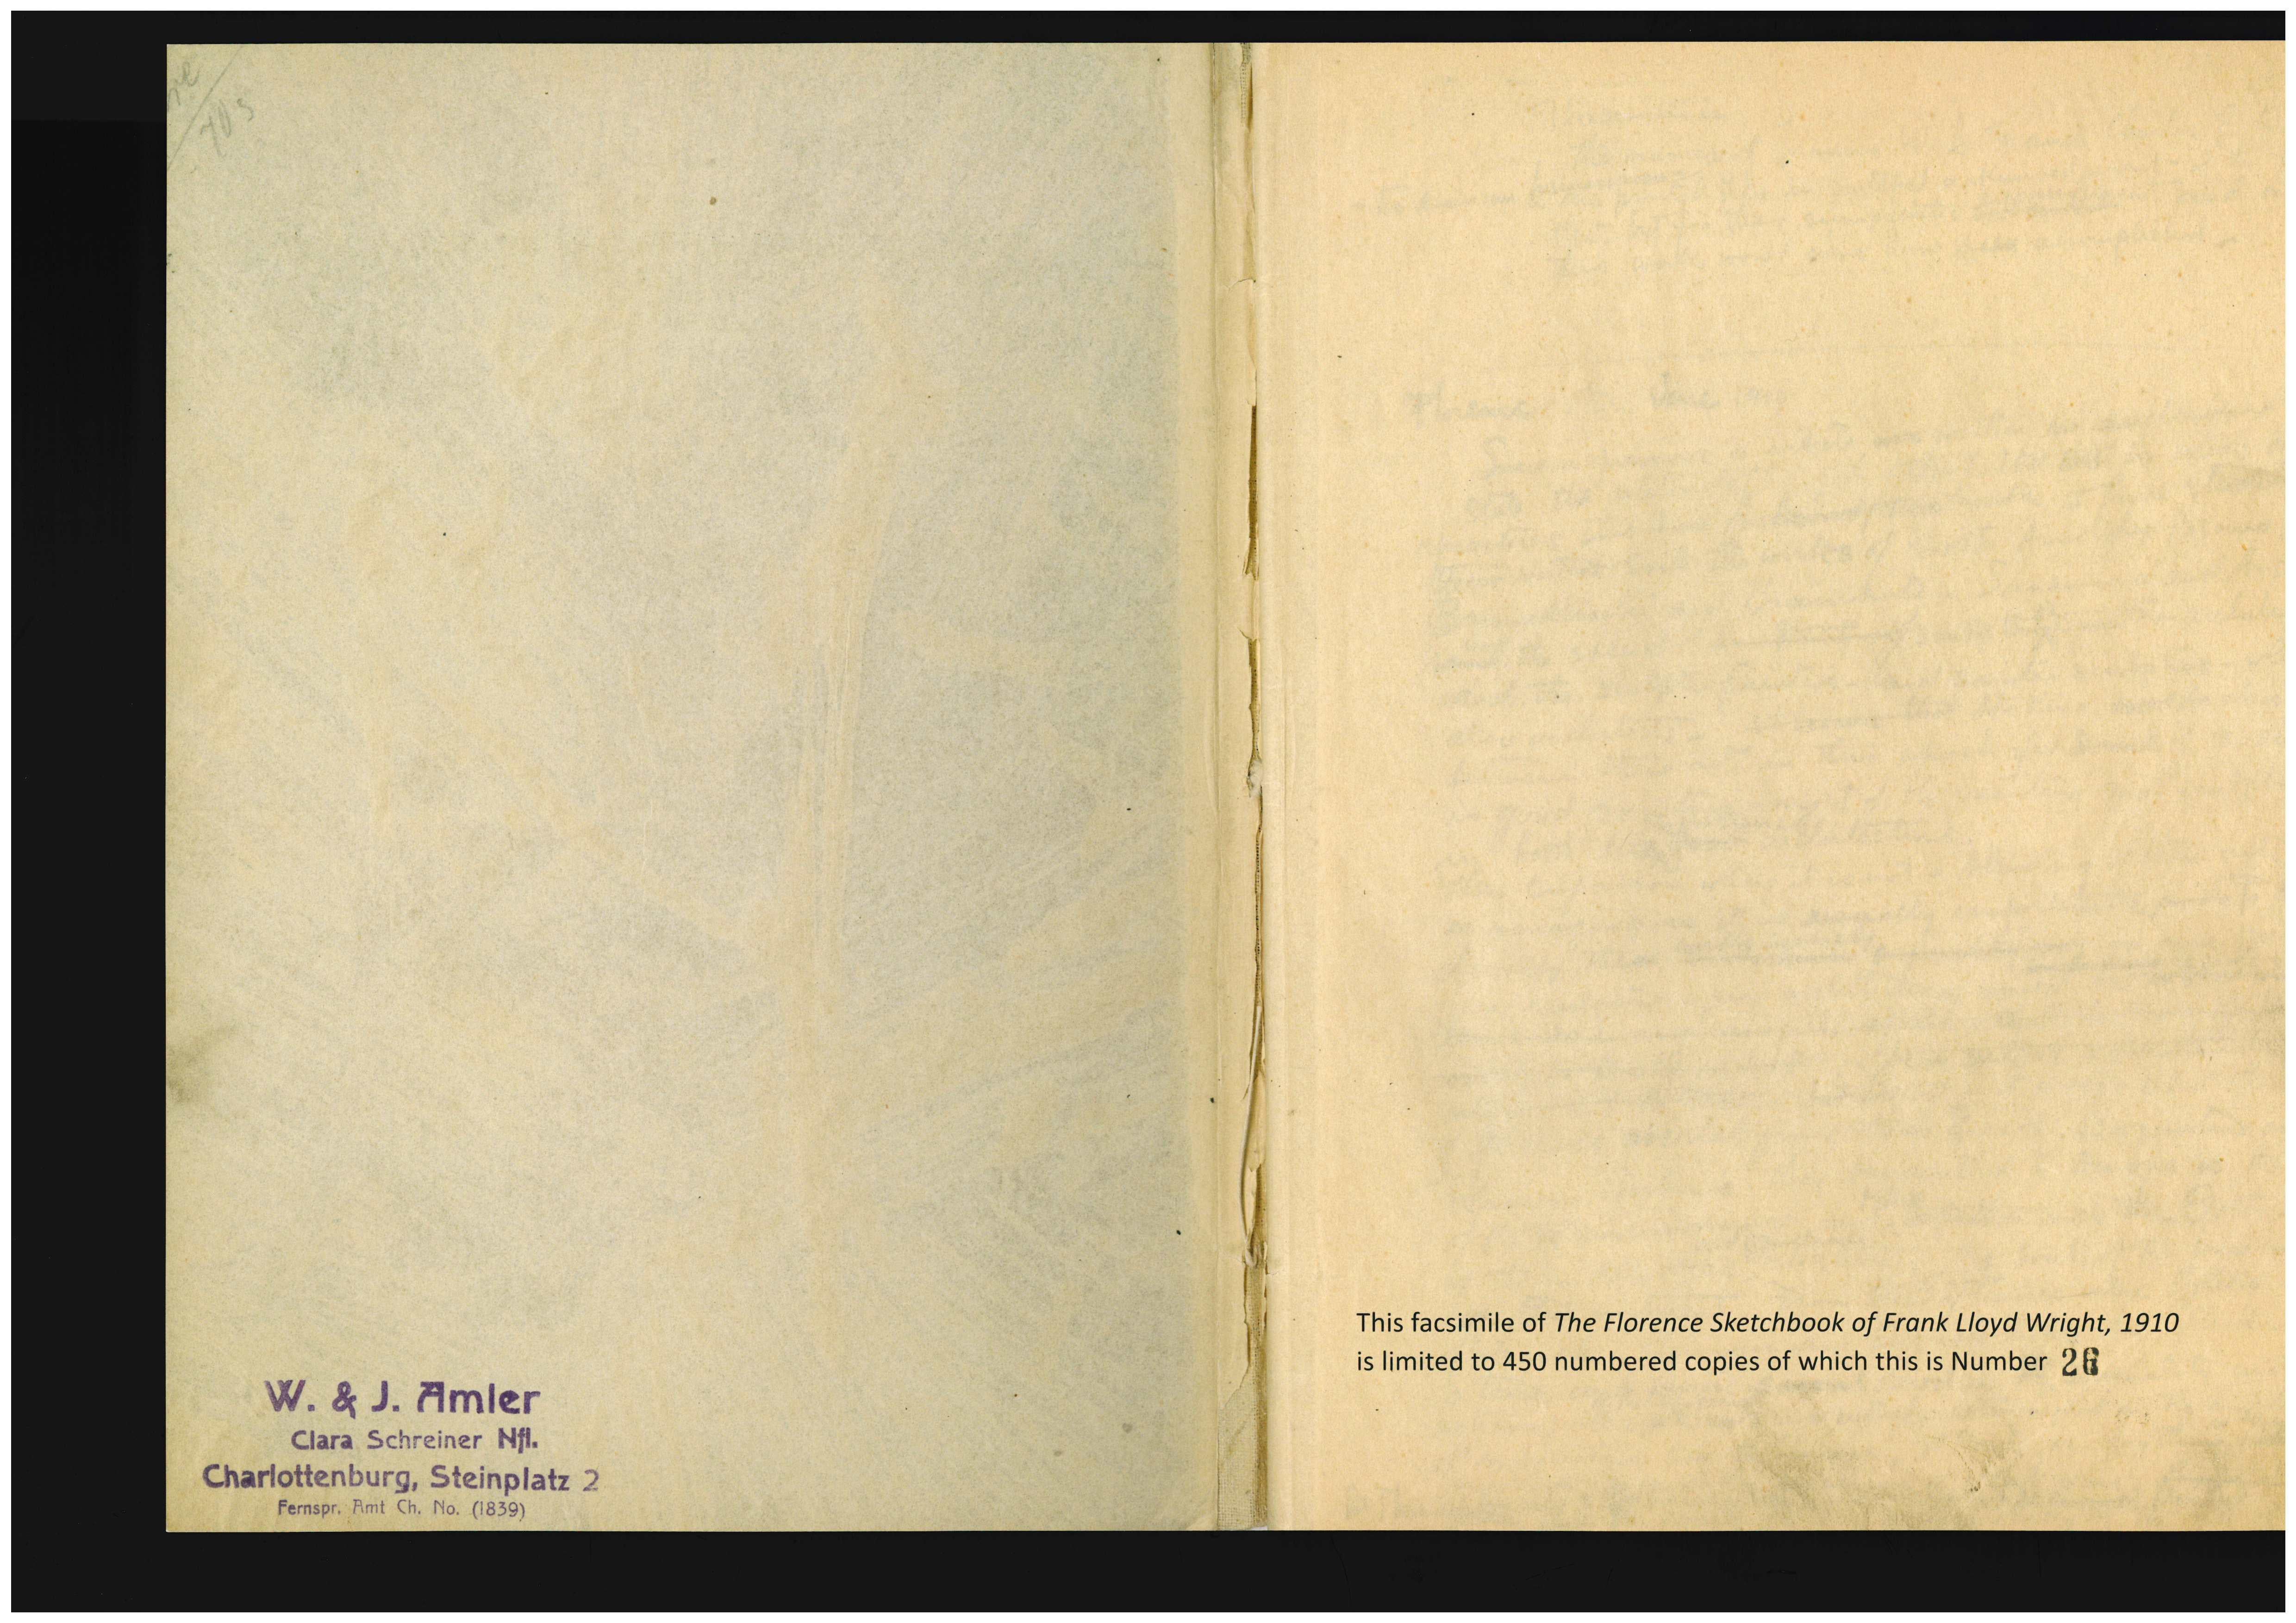 Il s'agit d'un fac-similé en édition limitée du carnet de croquis manuscrits de Frank Lloyds Wright qui a servi de maquette ou de mise en page pour le célèbre portfolio Wasmuth de 1910 intitulé 